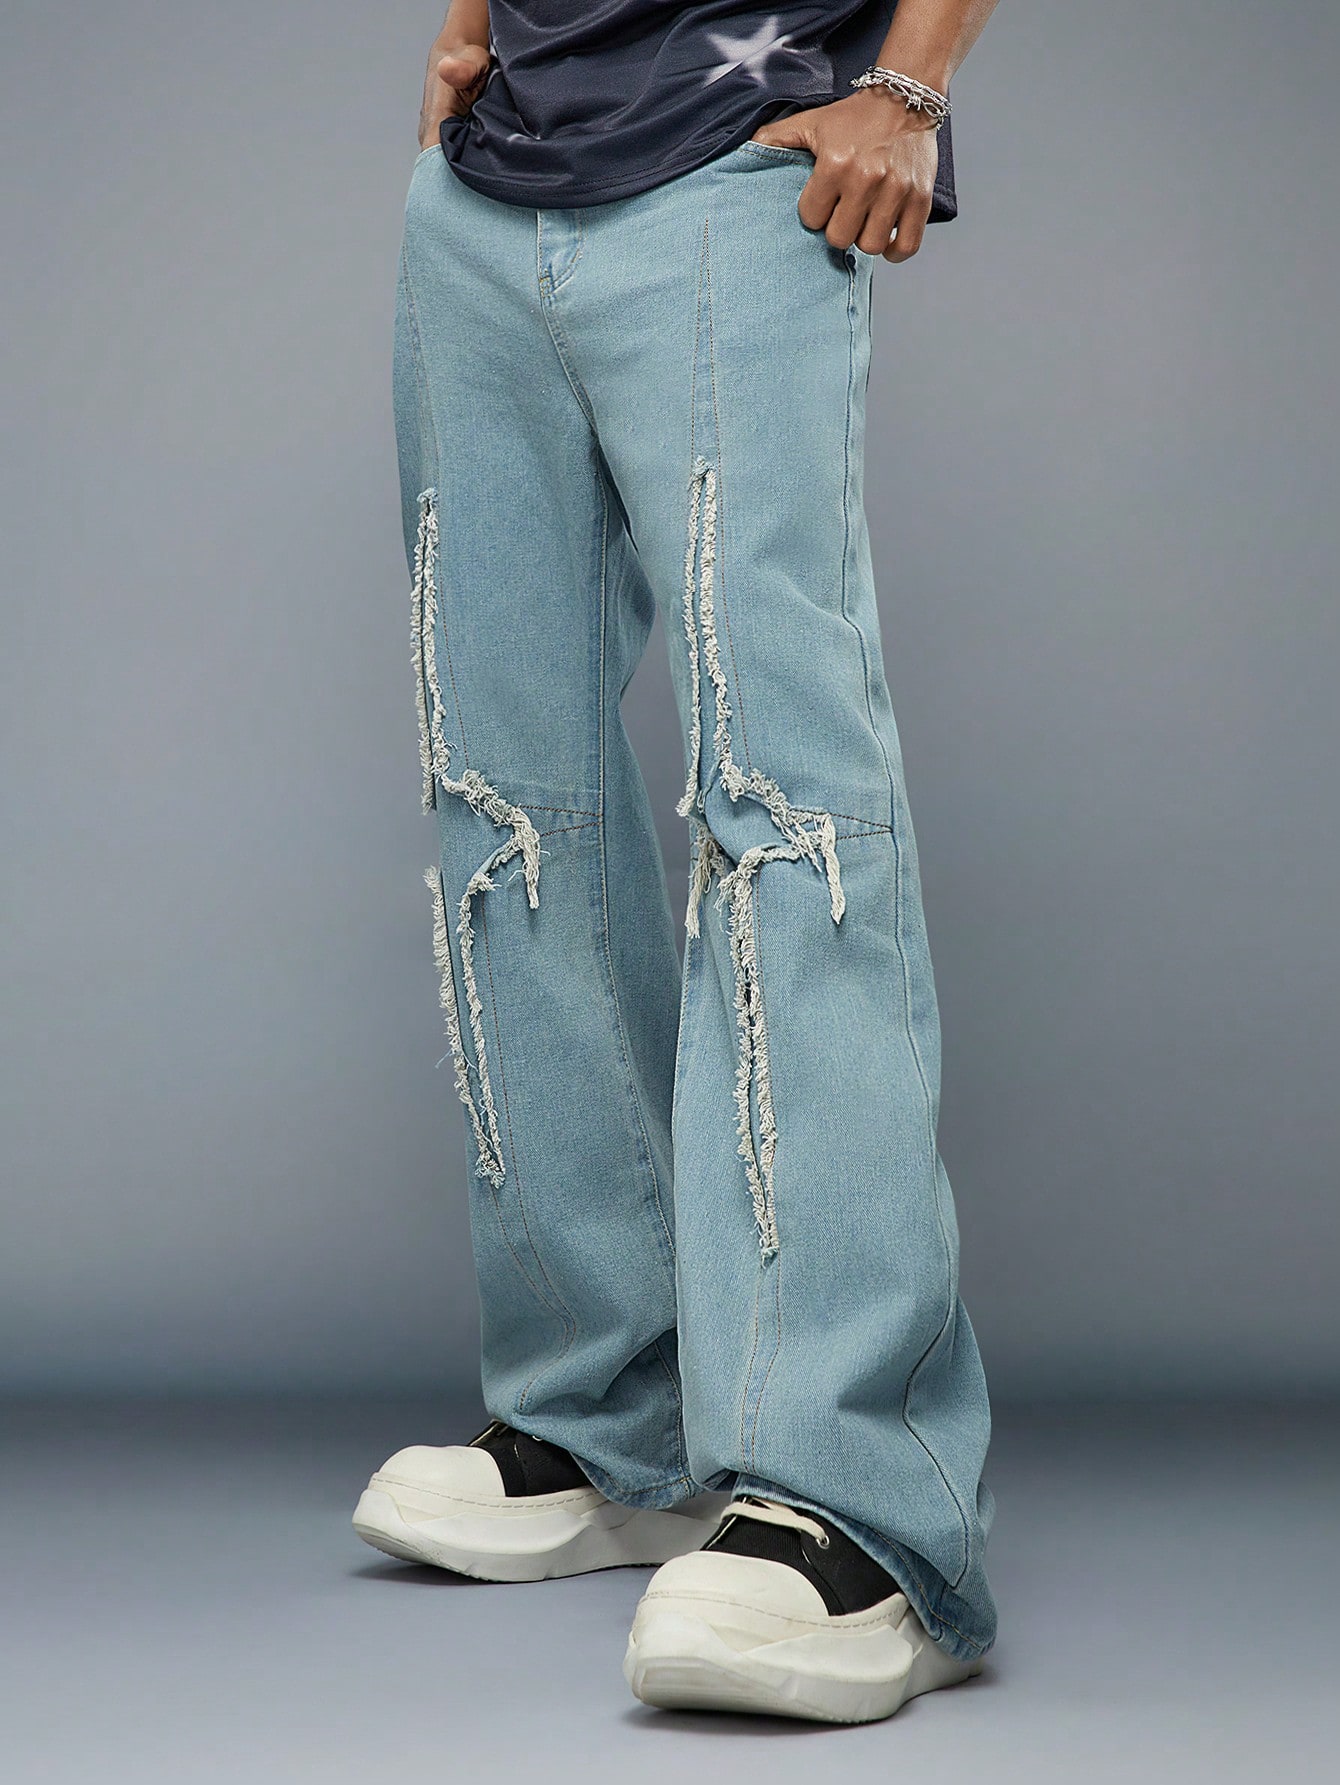 Мужские повседневные джинсы Manfinity EMRG с необработанной отделкой, синий